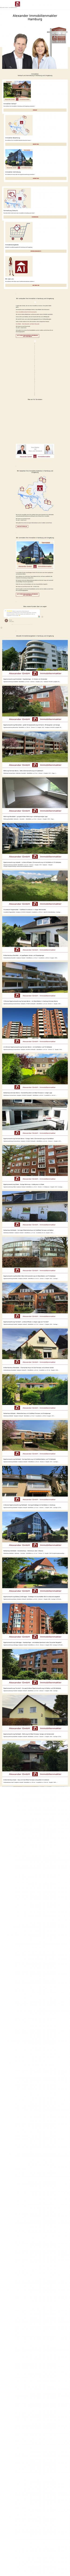 www.alexander-immobilien.de